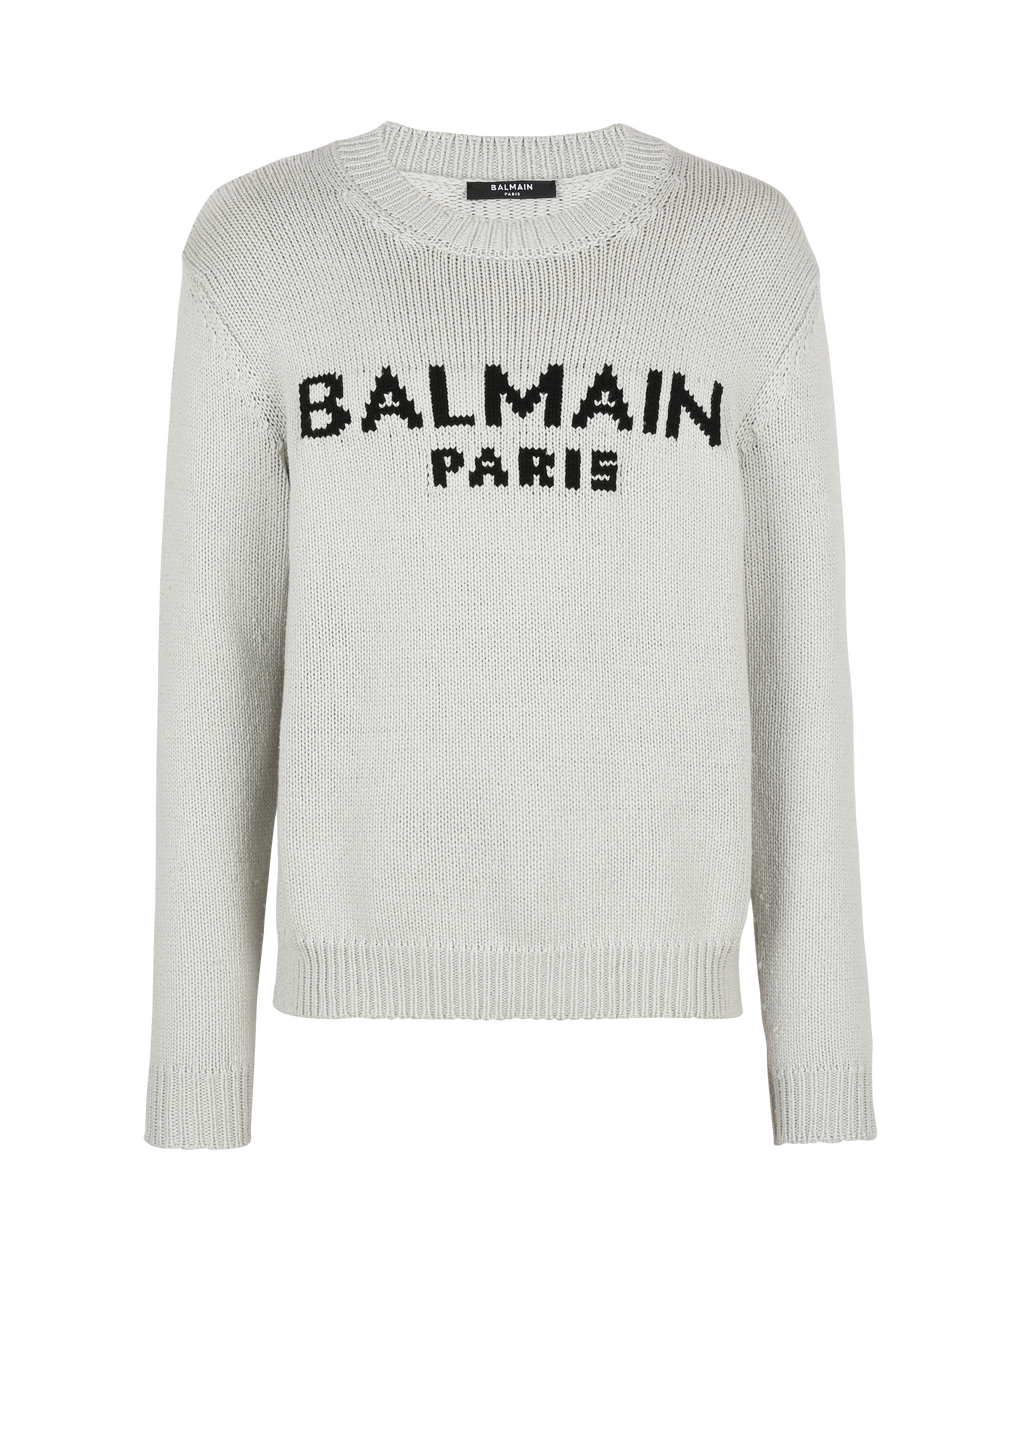 Wollpullover mit Logo von Balmain Paris, grau, hi-res